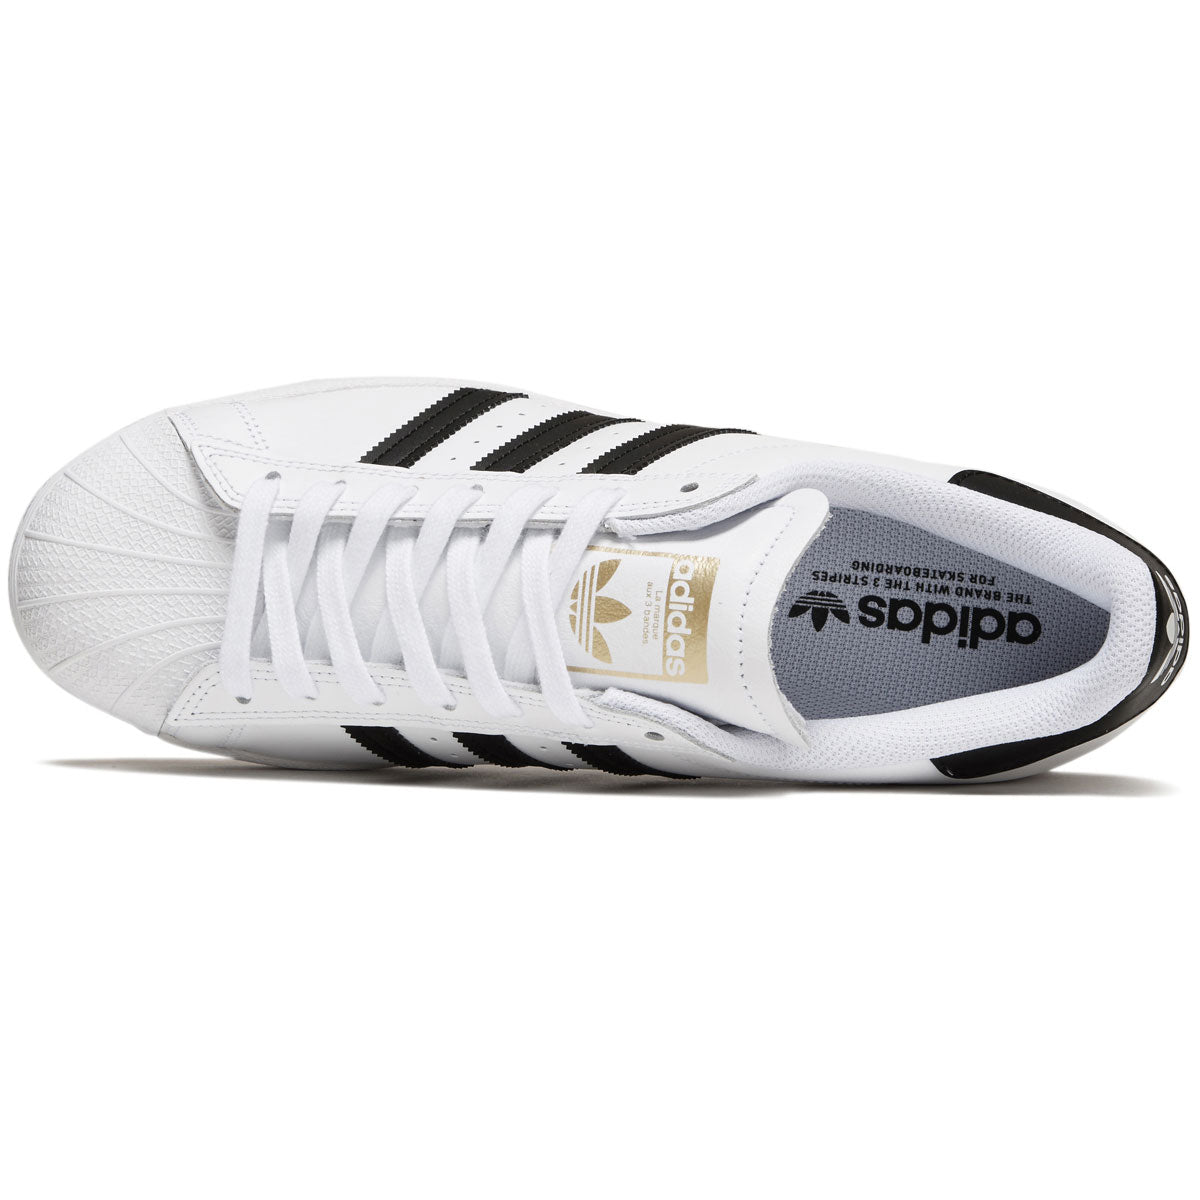 Adidas Men's Superstar ADV Sneaker